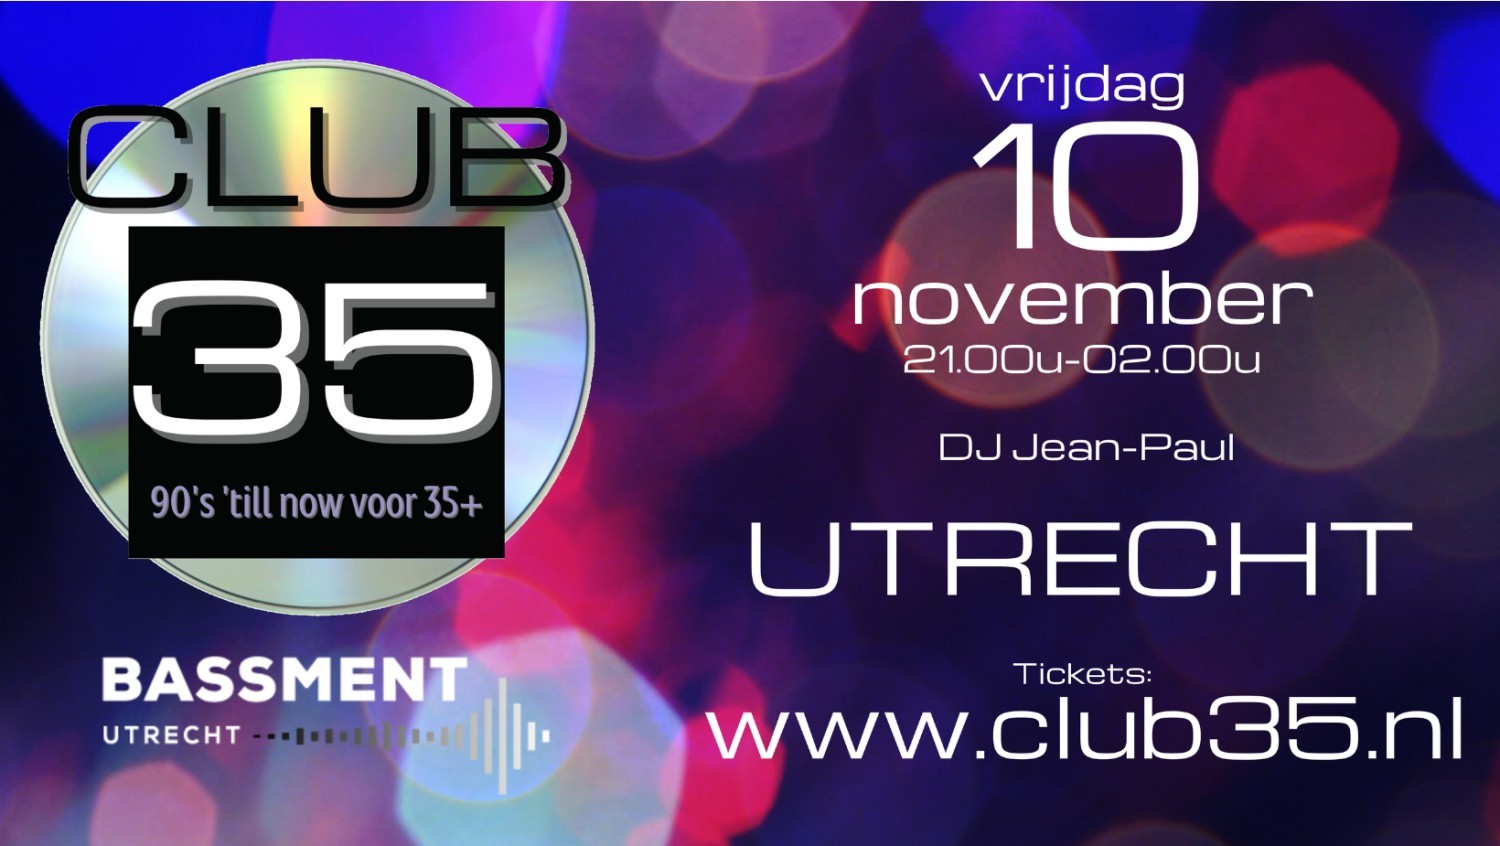 Party nieuws: Club35 komt naar Bassment Utrecht